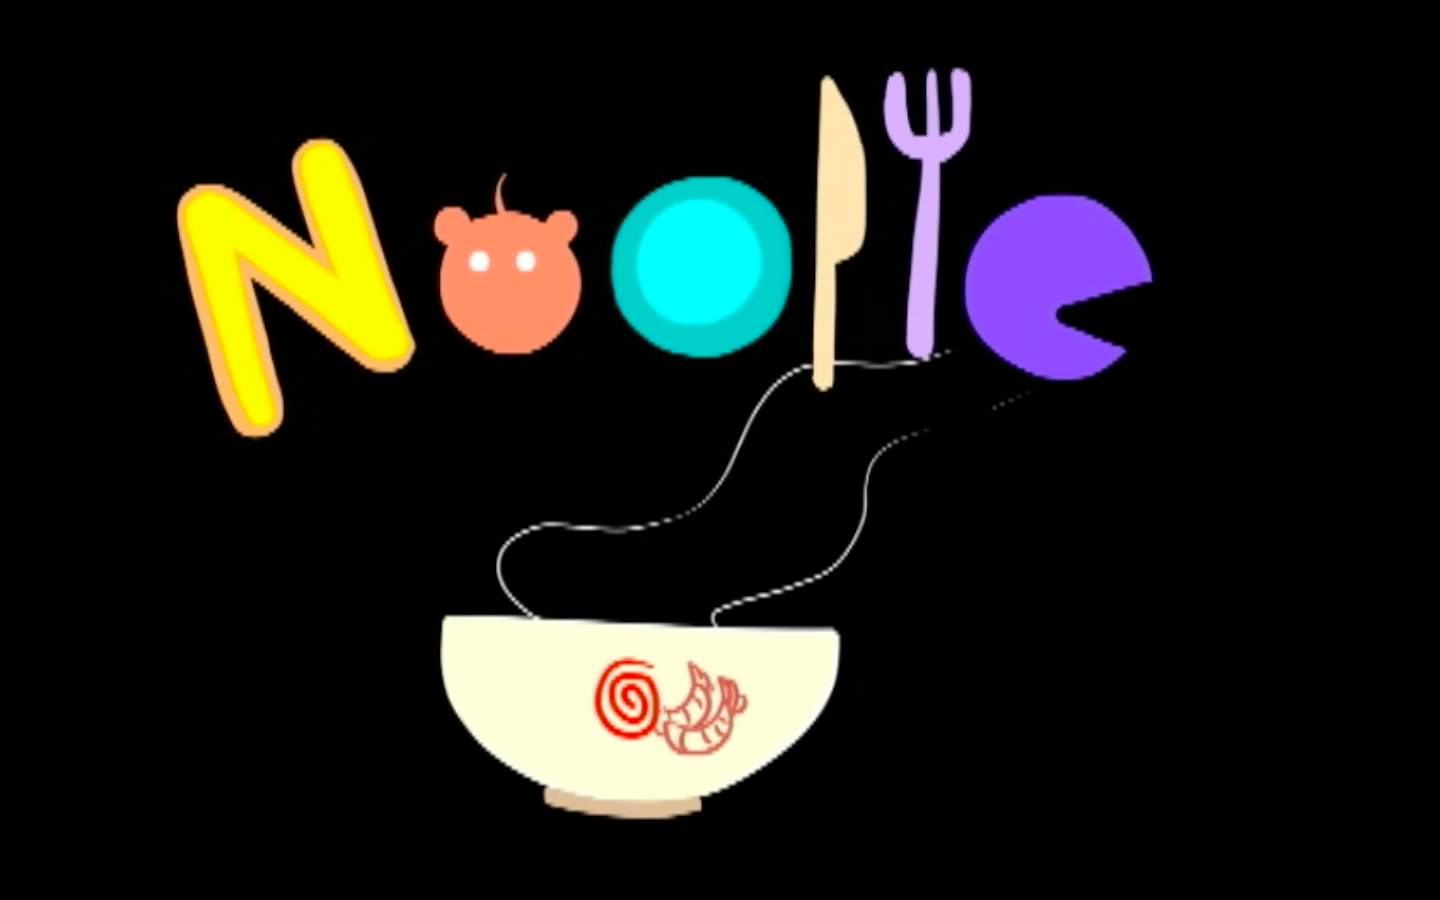 Project – Noodle